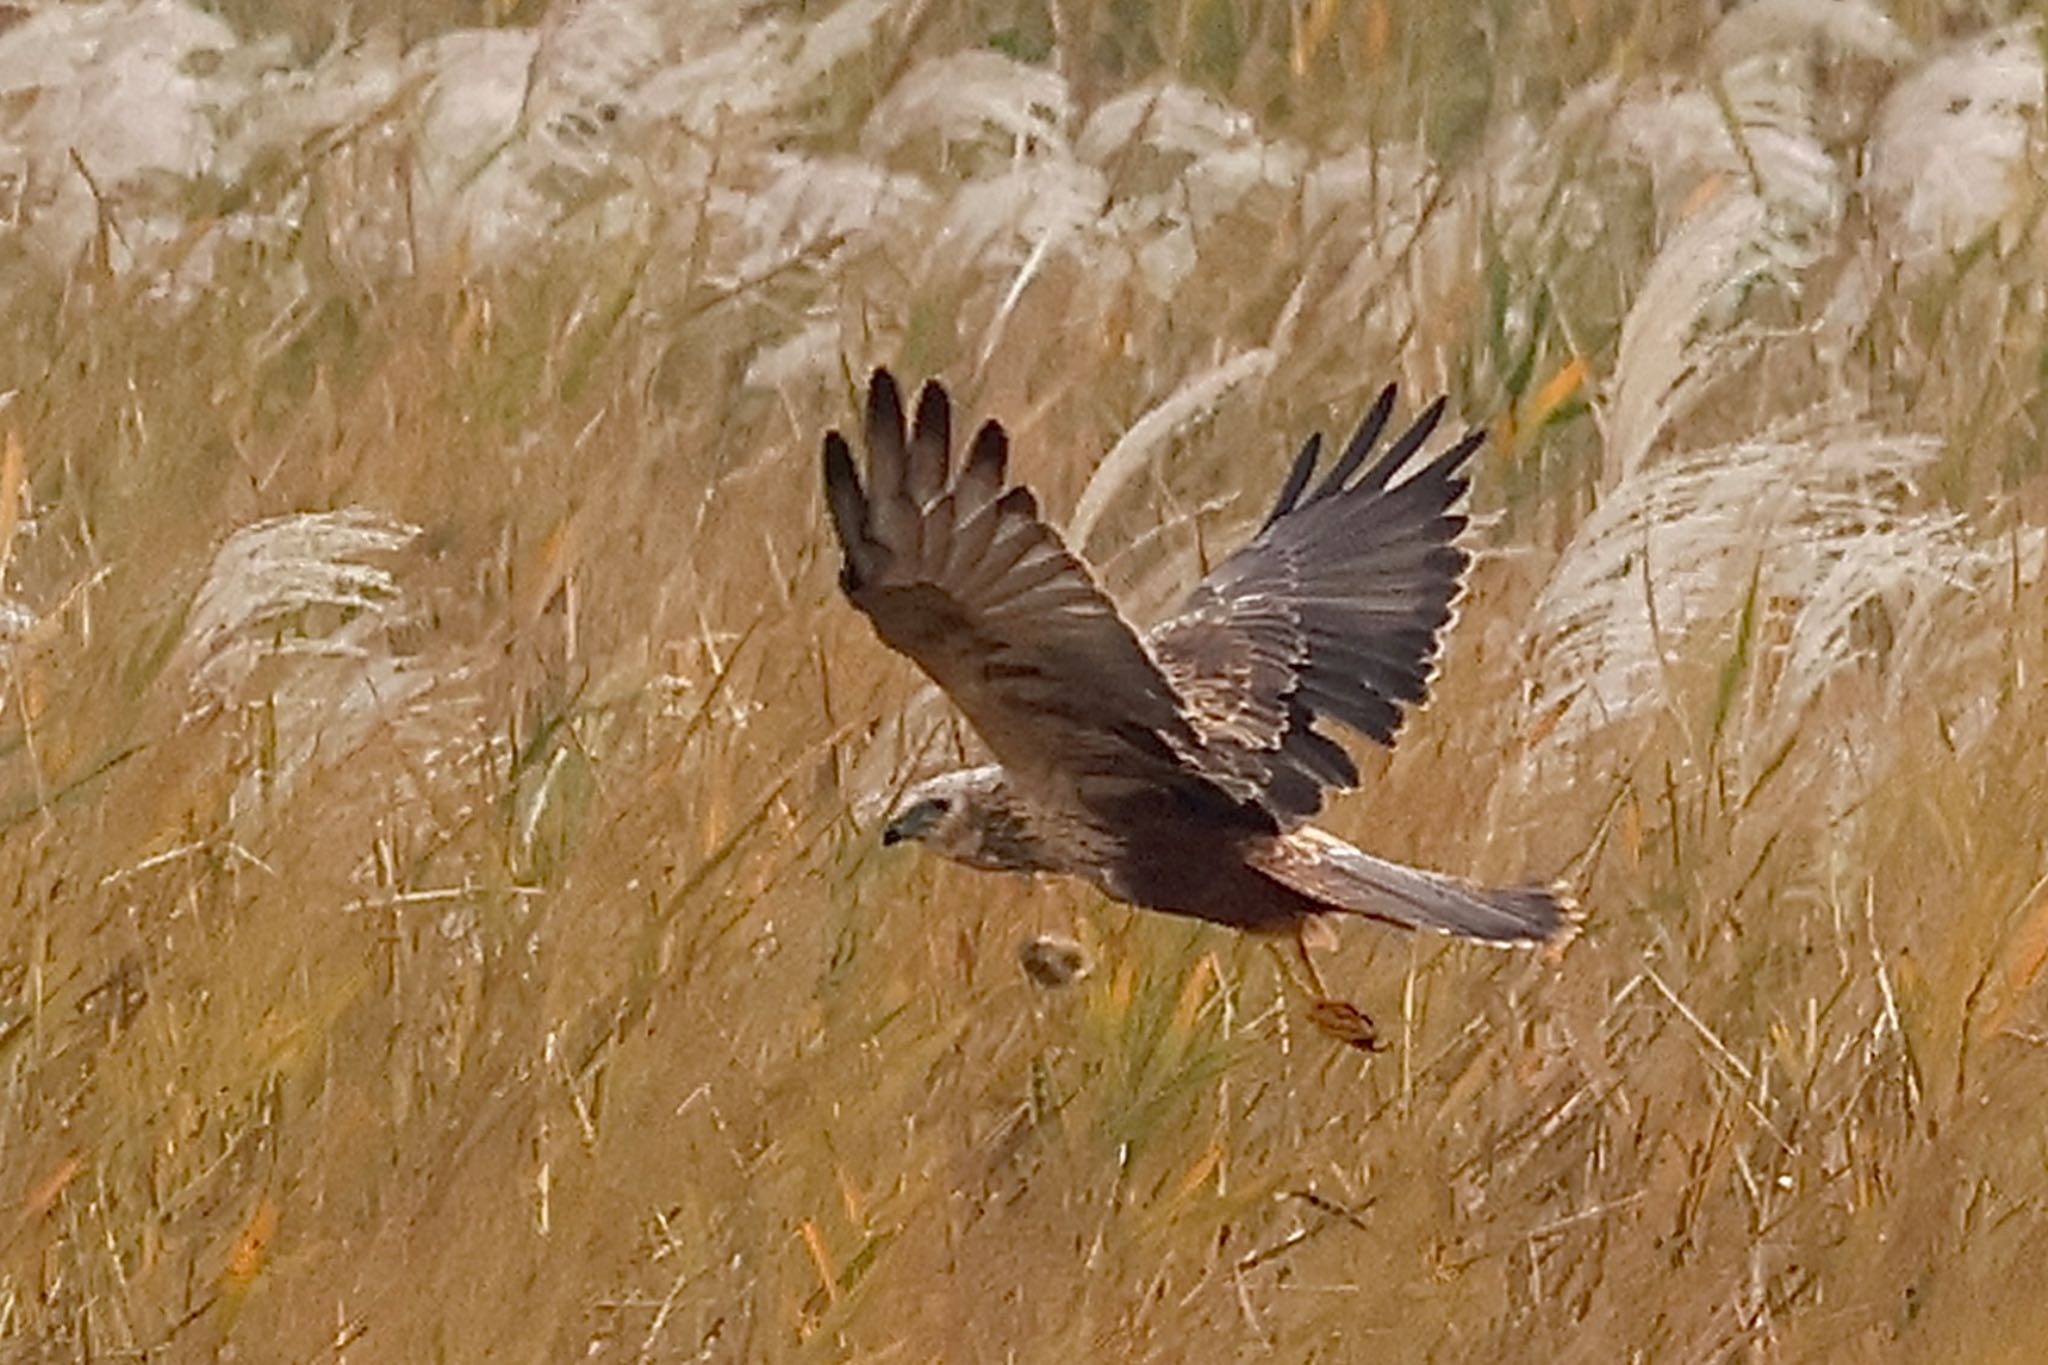 Eastern Marsh Harrier